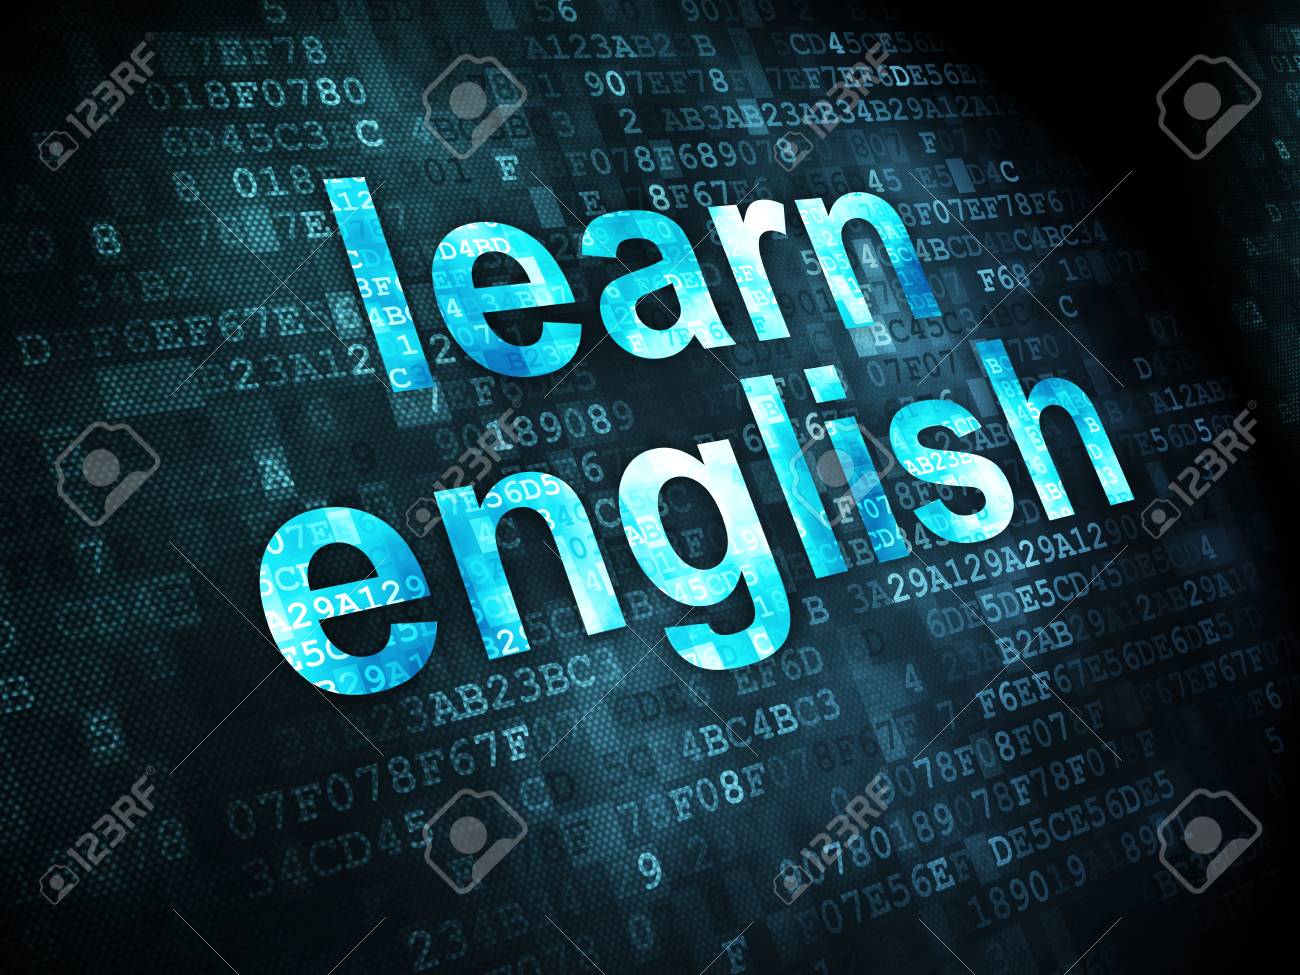 یادگیری زبان انگلیسی دیجیتالی